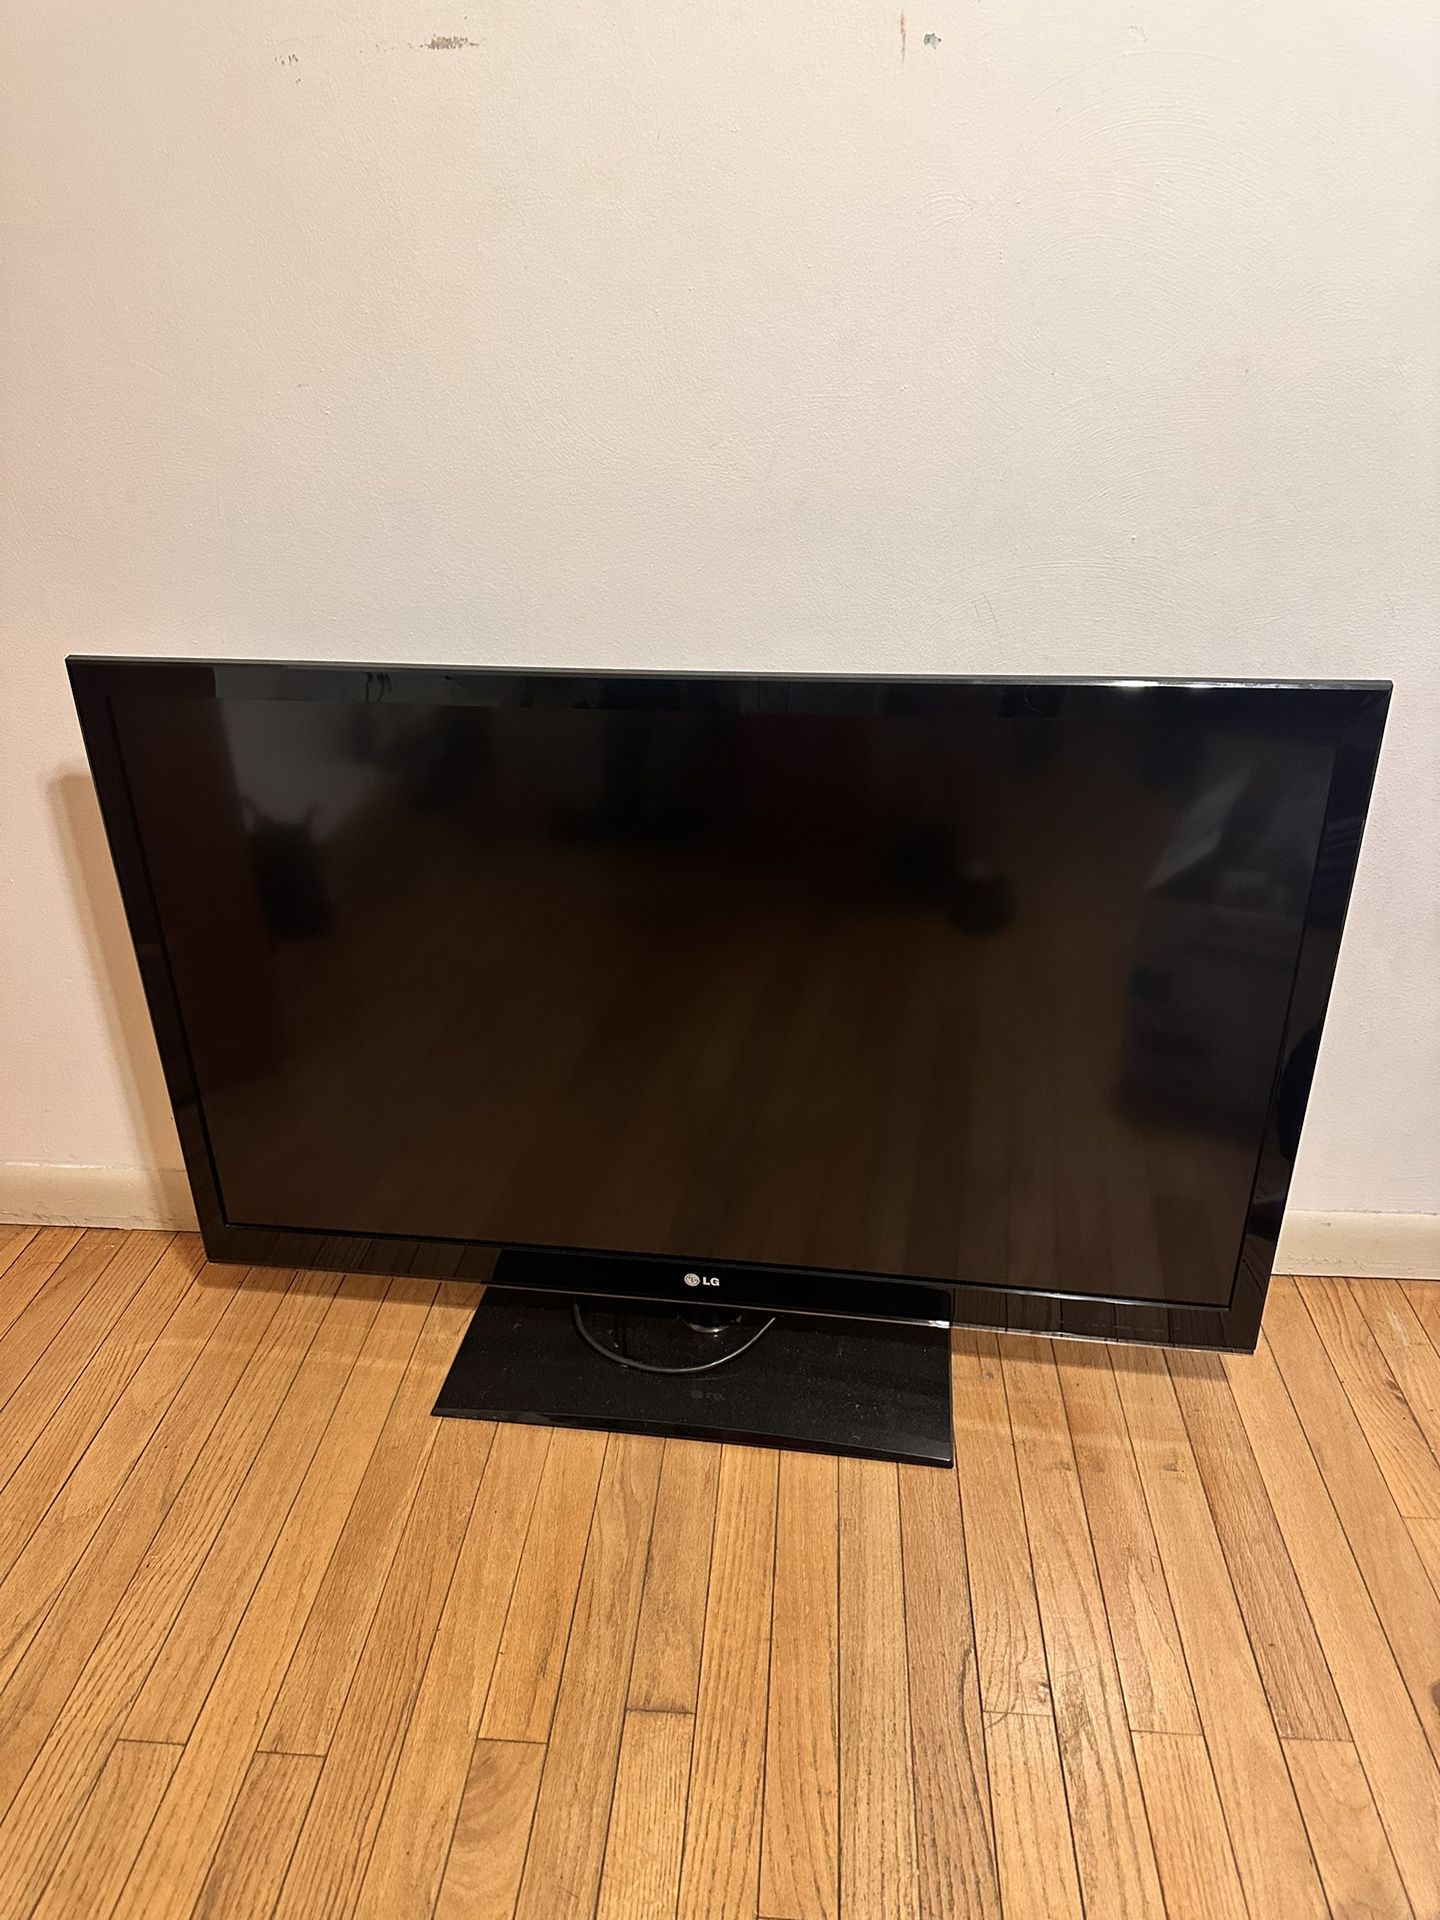 LG 46 Inch Tv